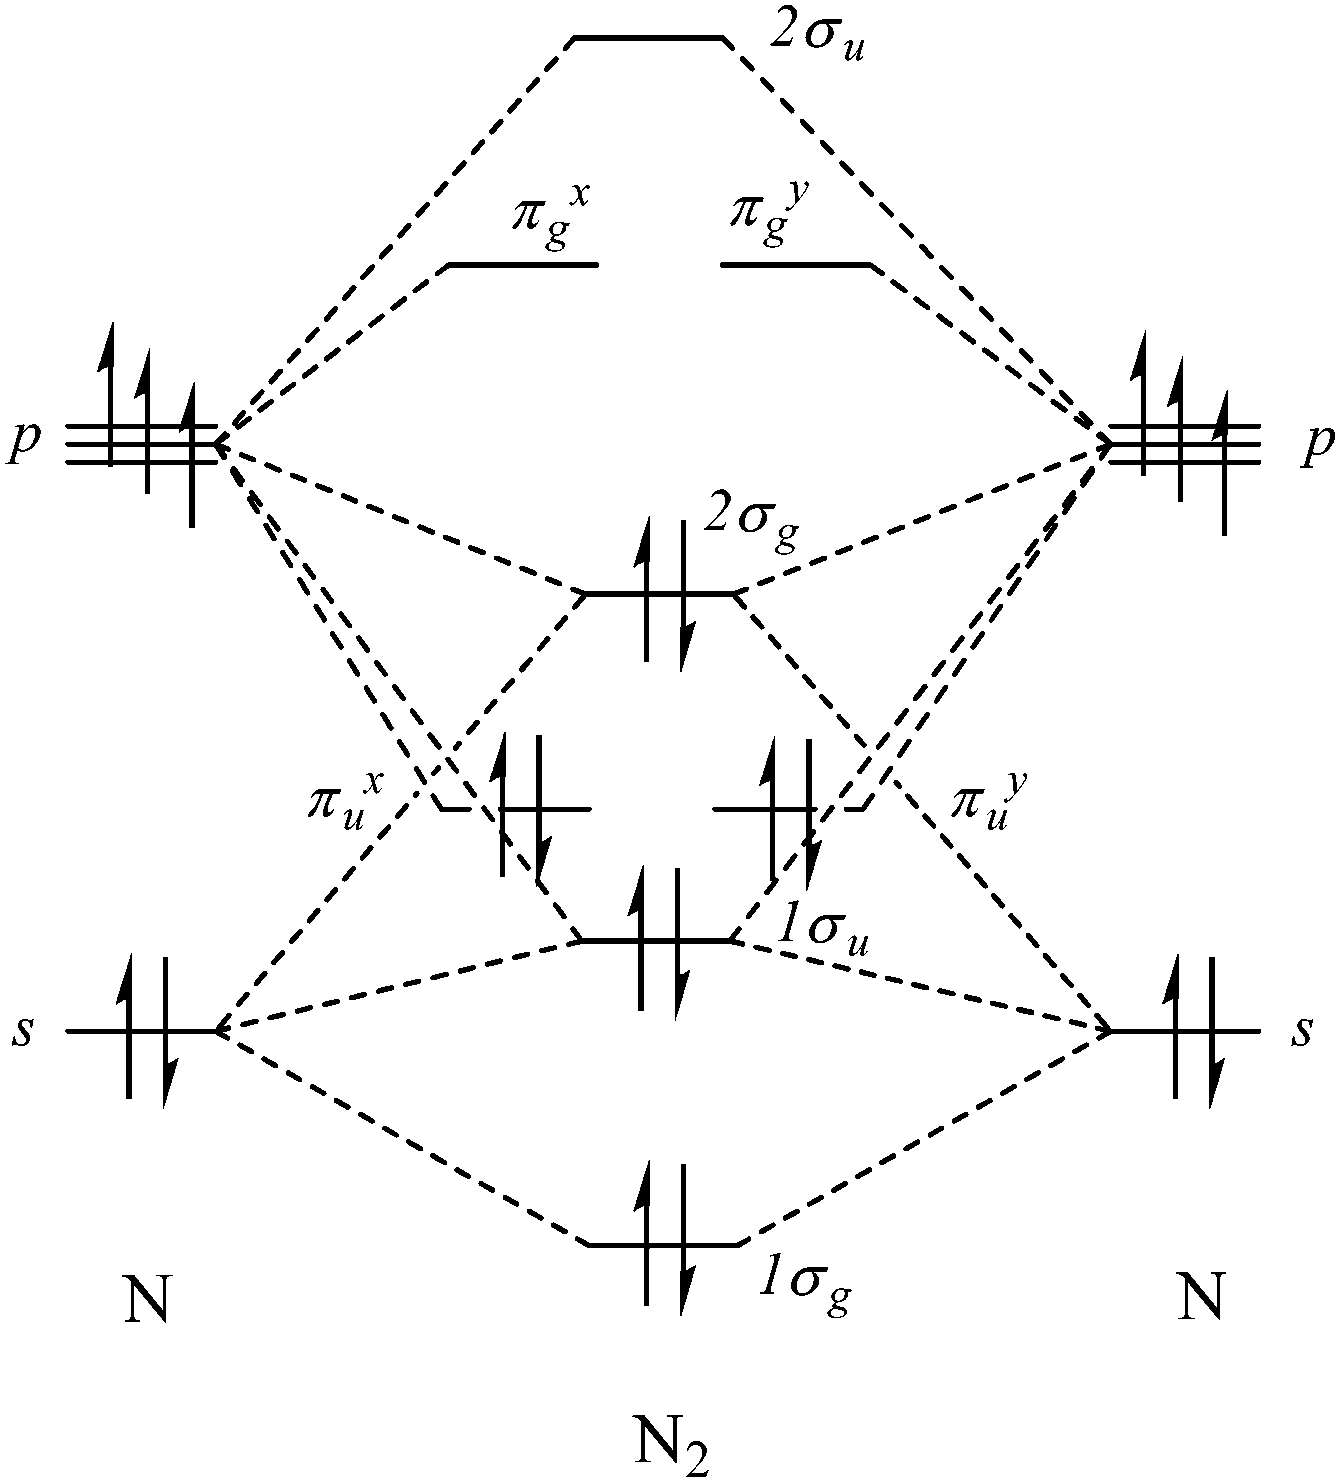 molecular orbital diagram for nh3